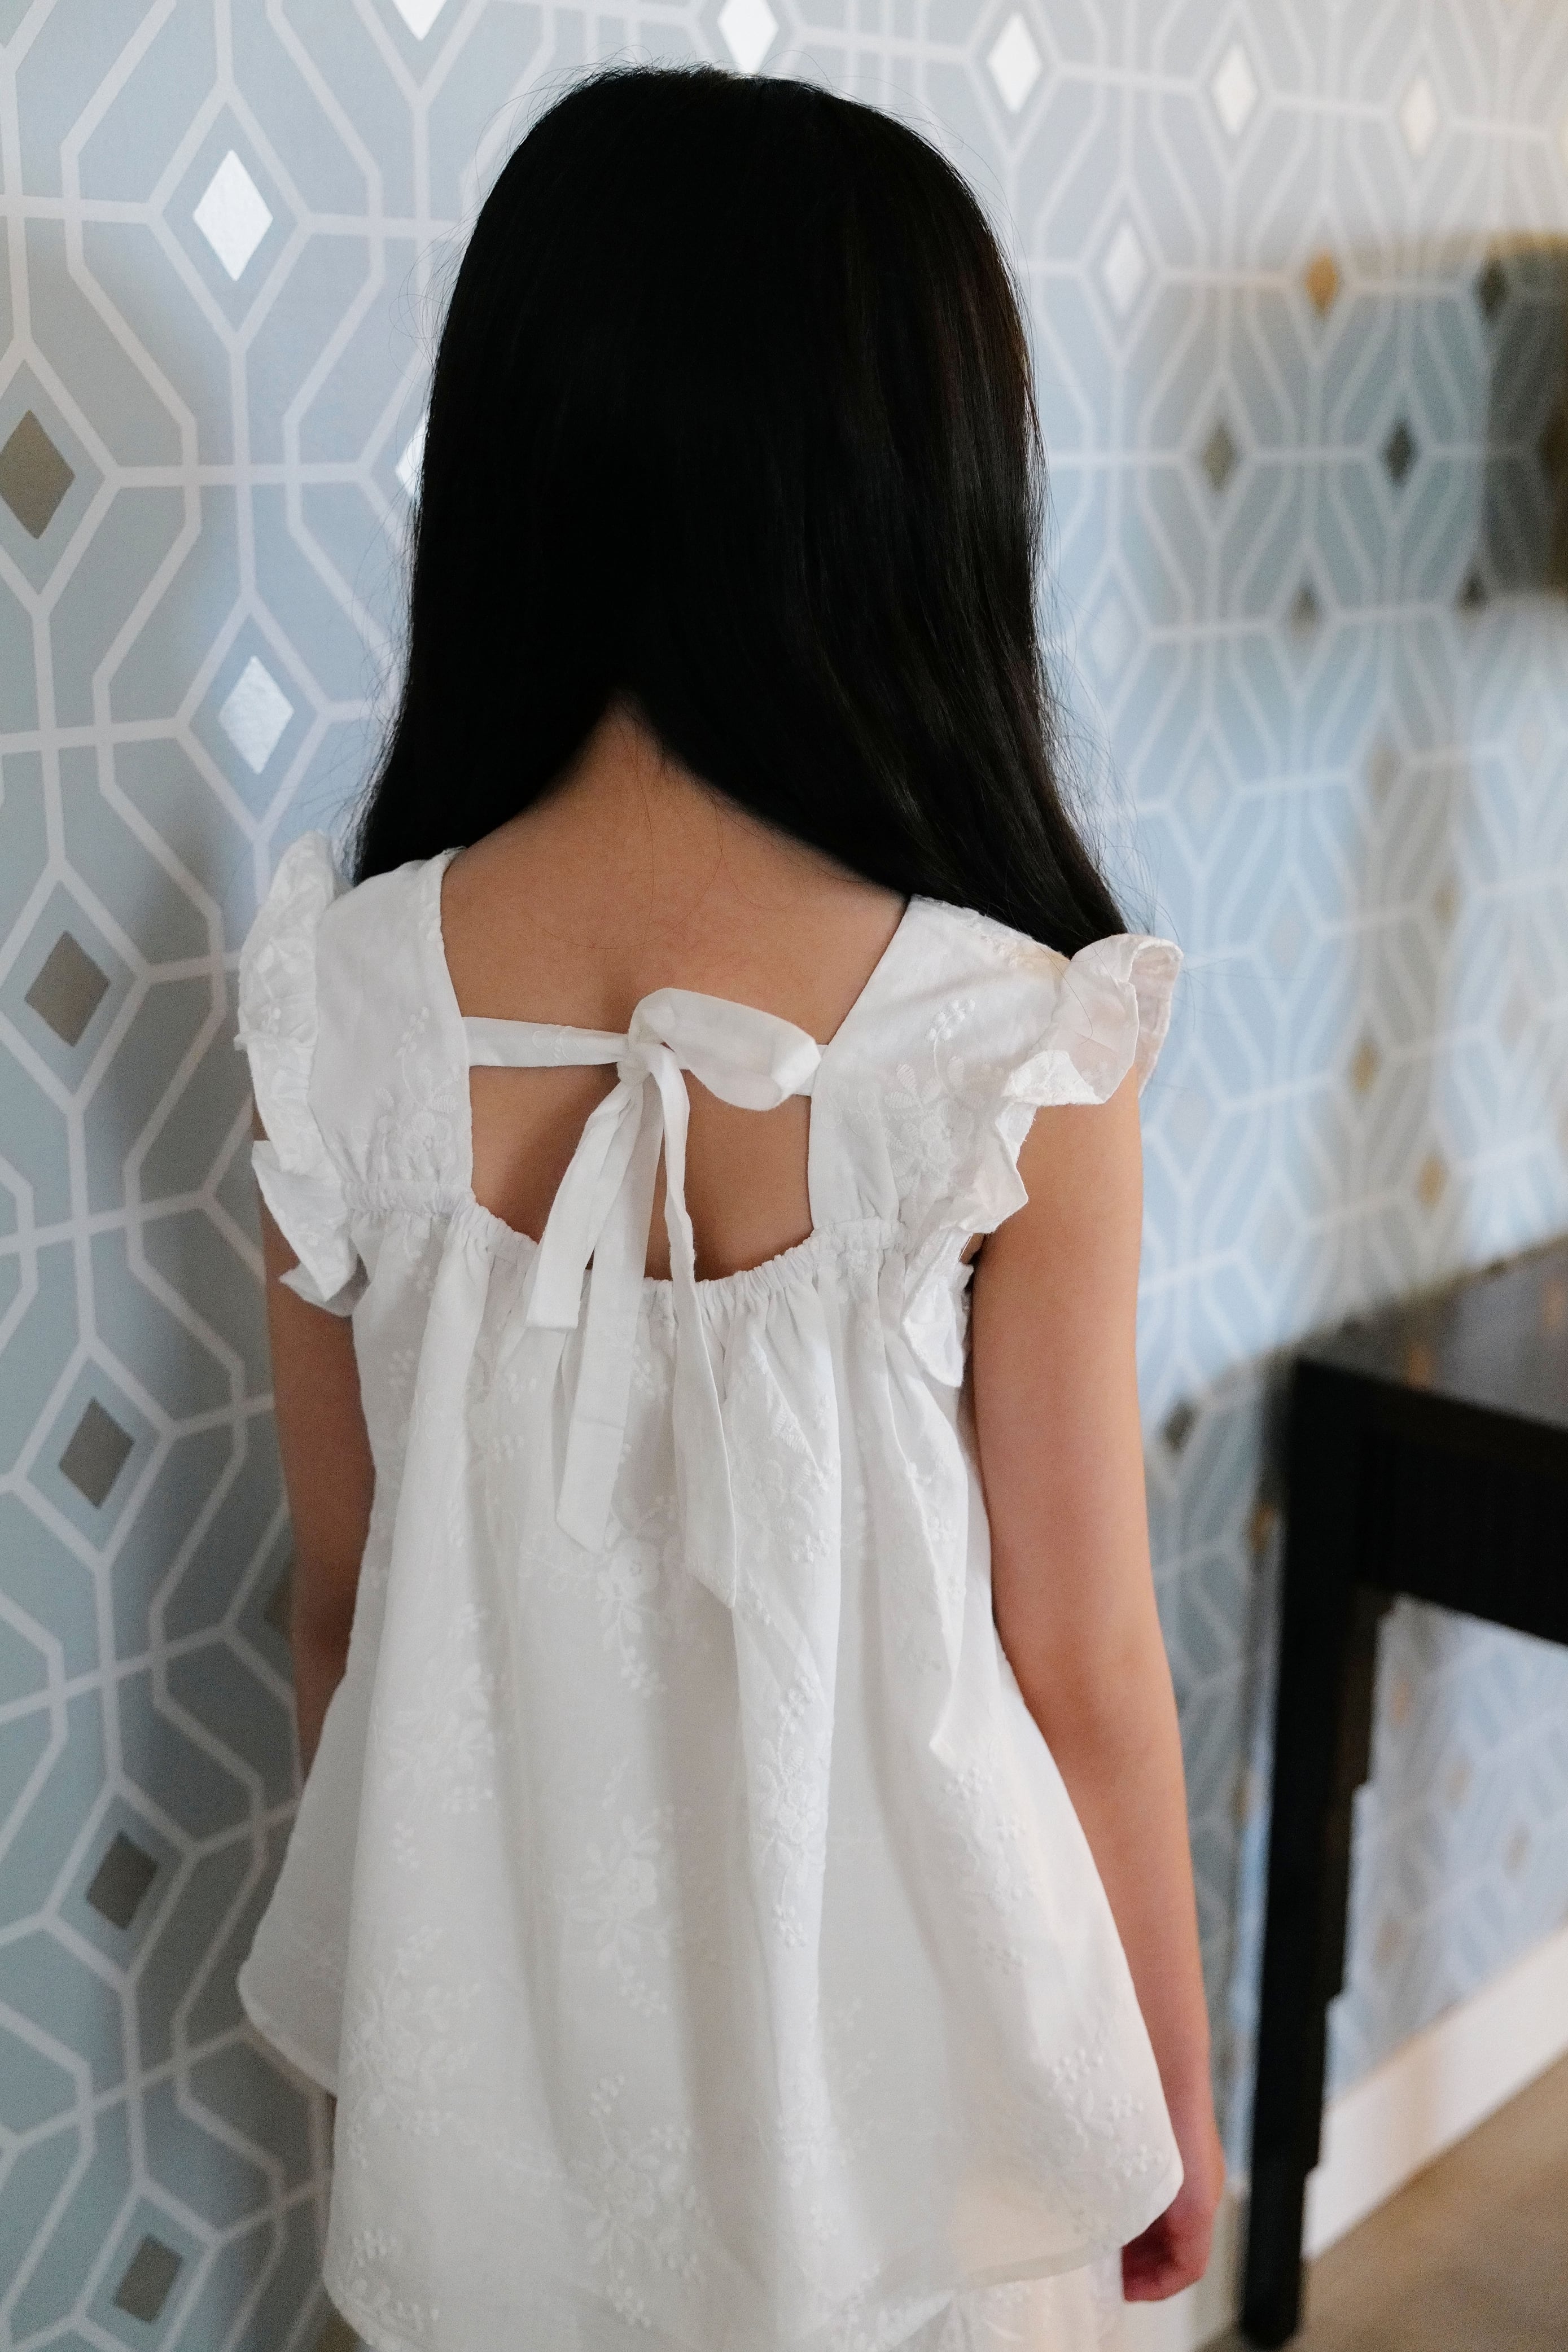 Little girl wearing a white dress facing a blue wall